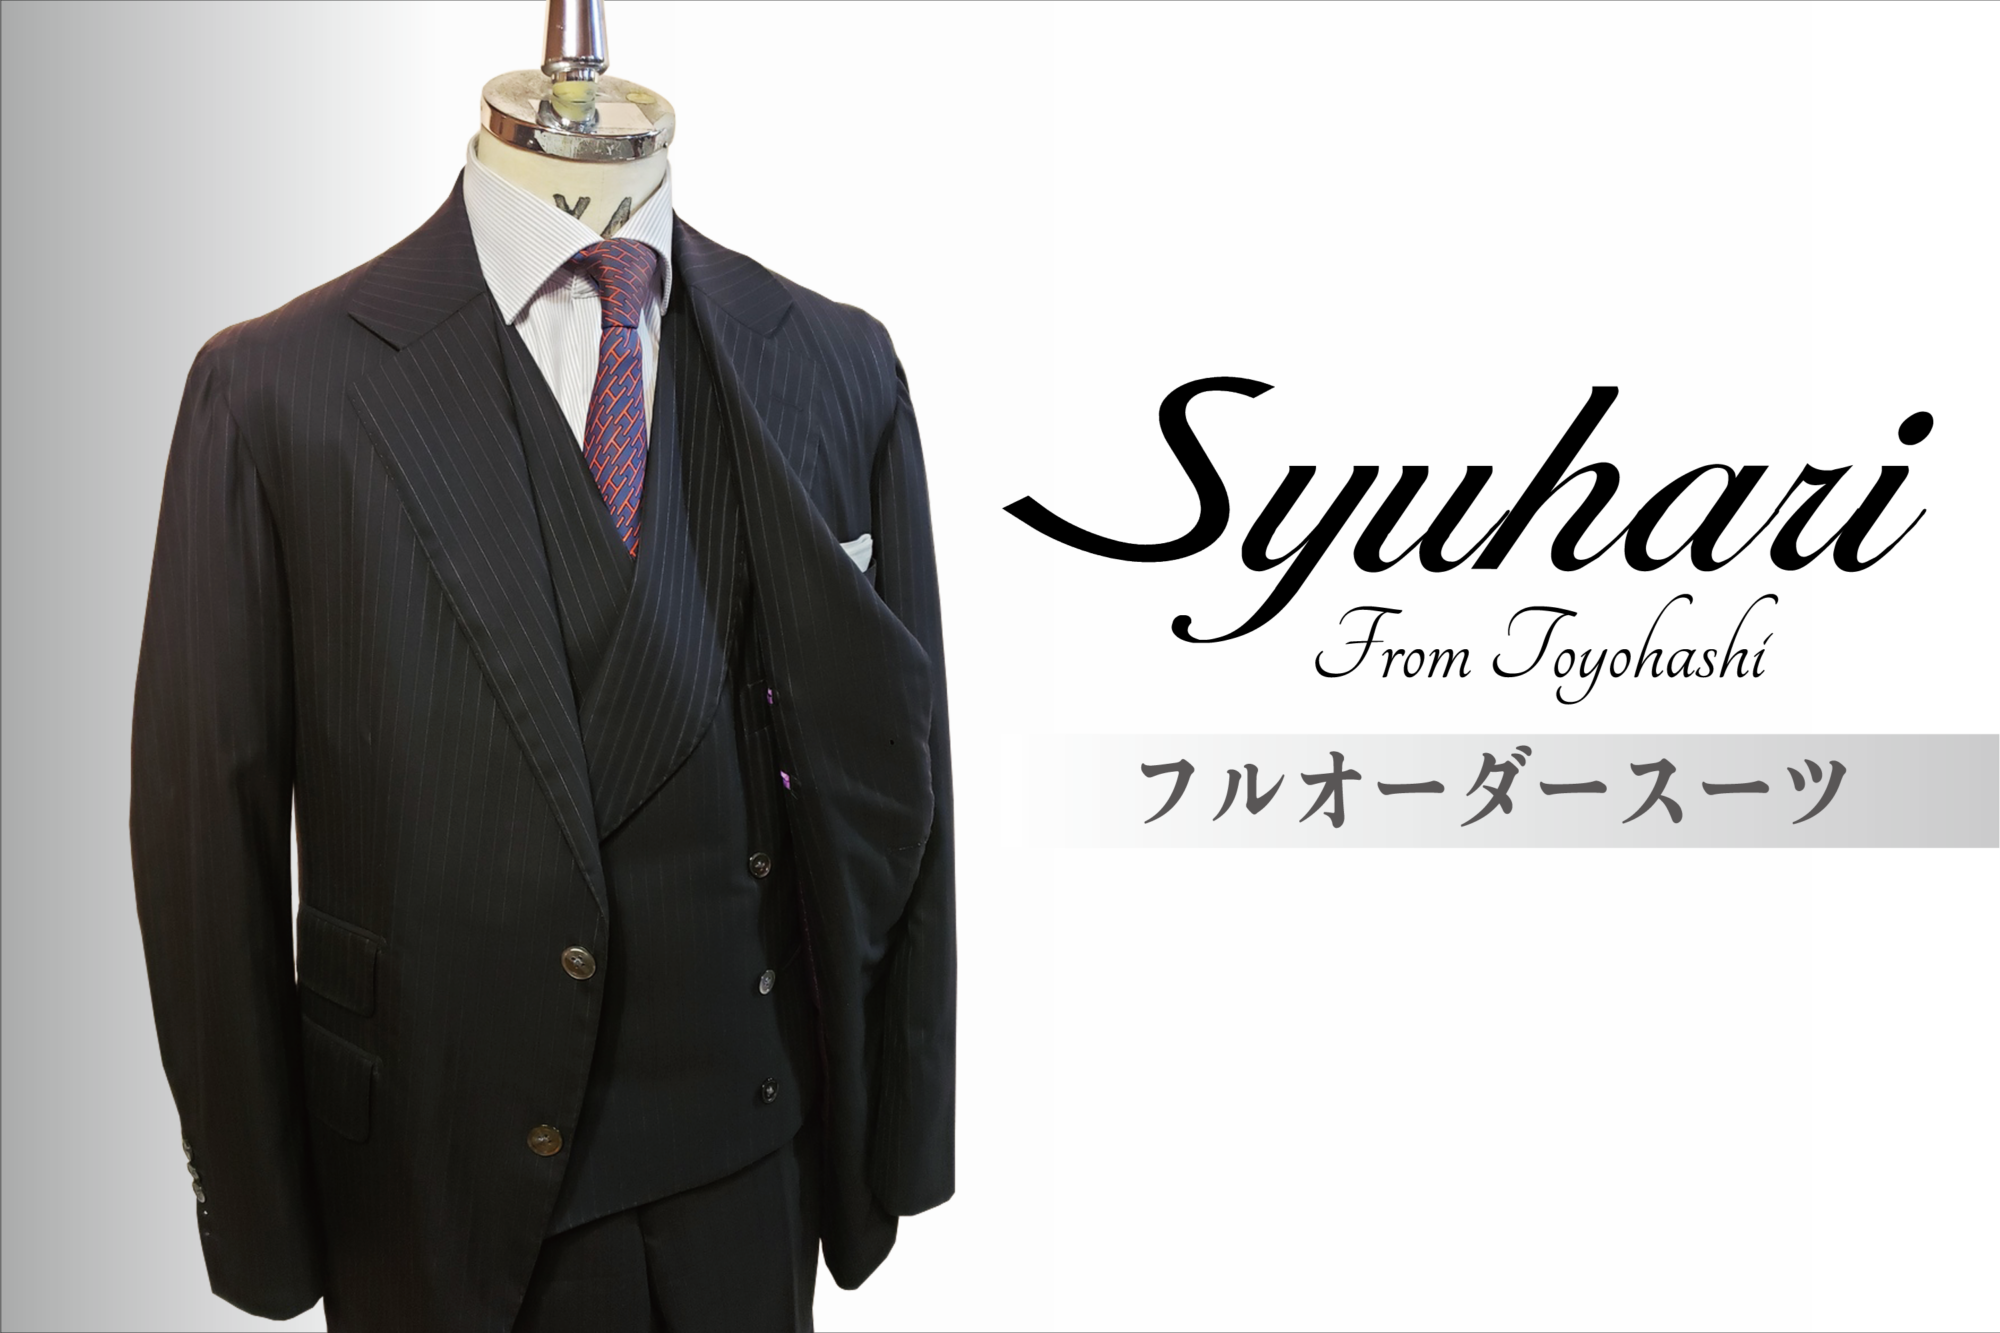 スーツ(Suit) – Syuhari(シュハリ)– オーダースーツ店– 愛知県豊橋市